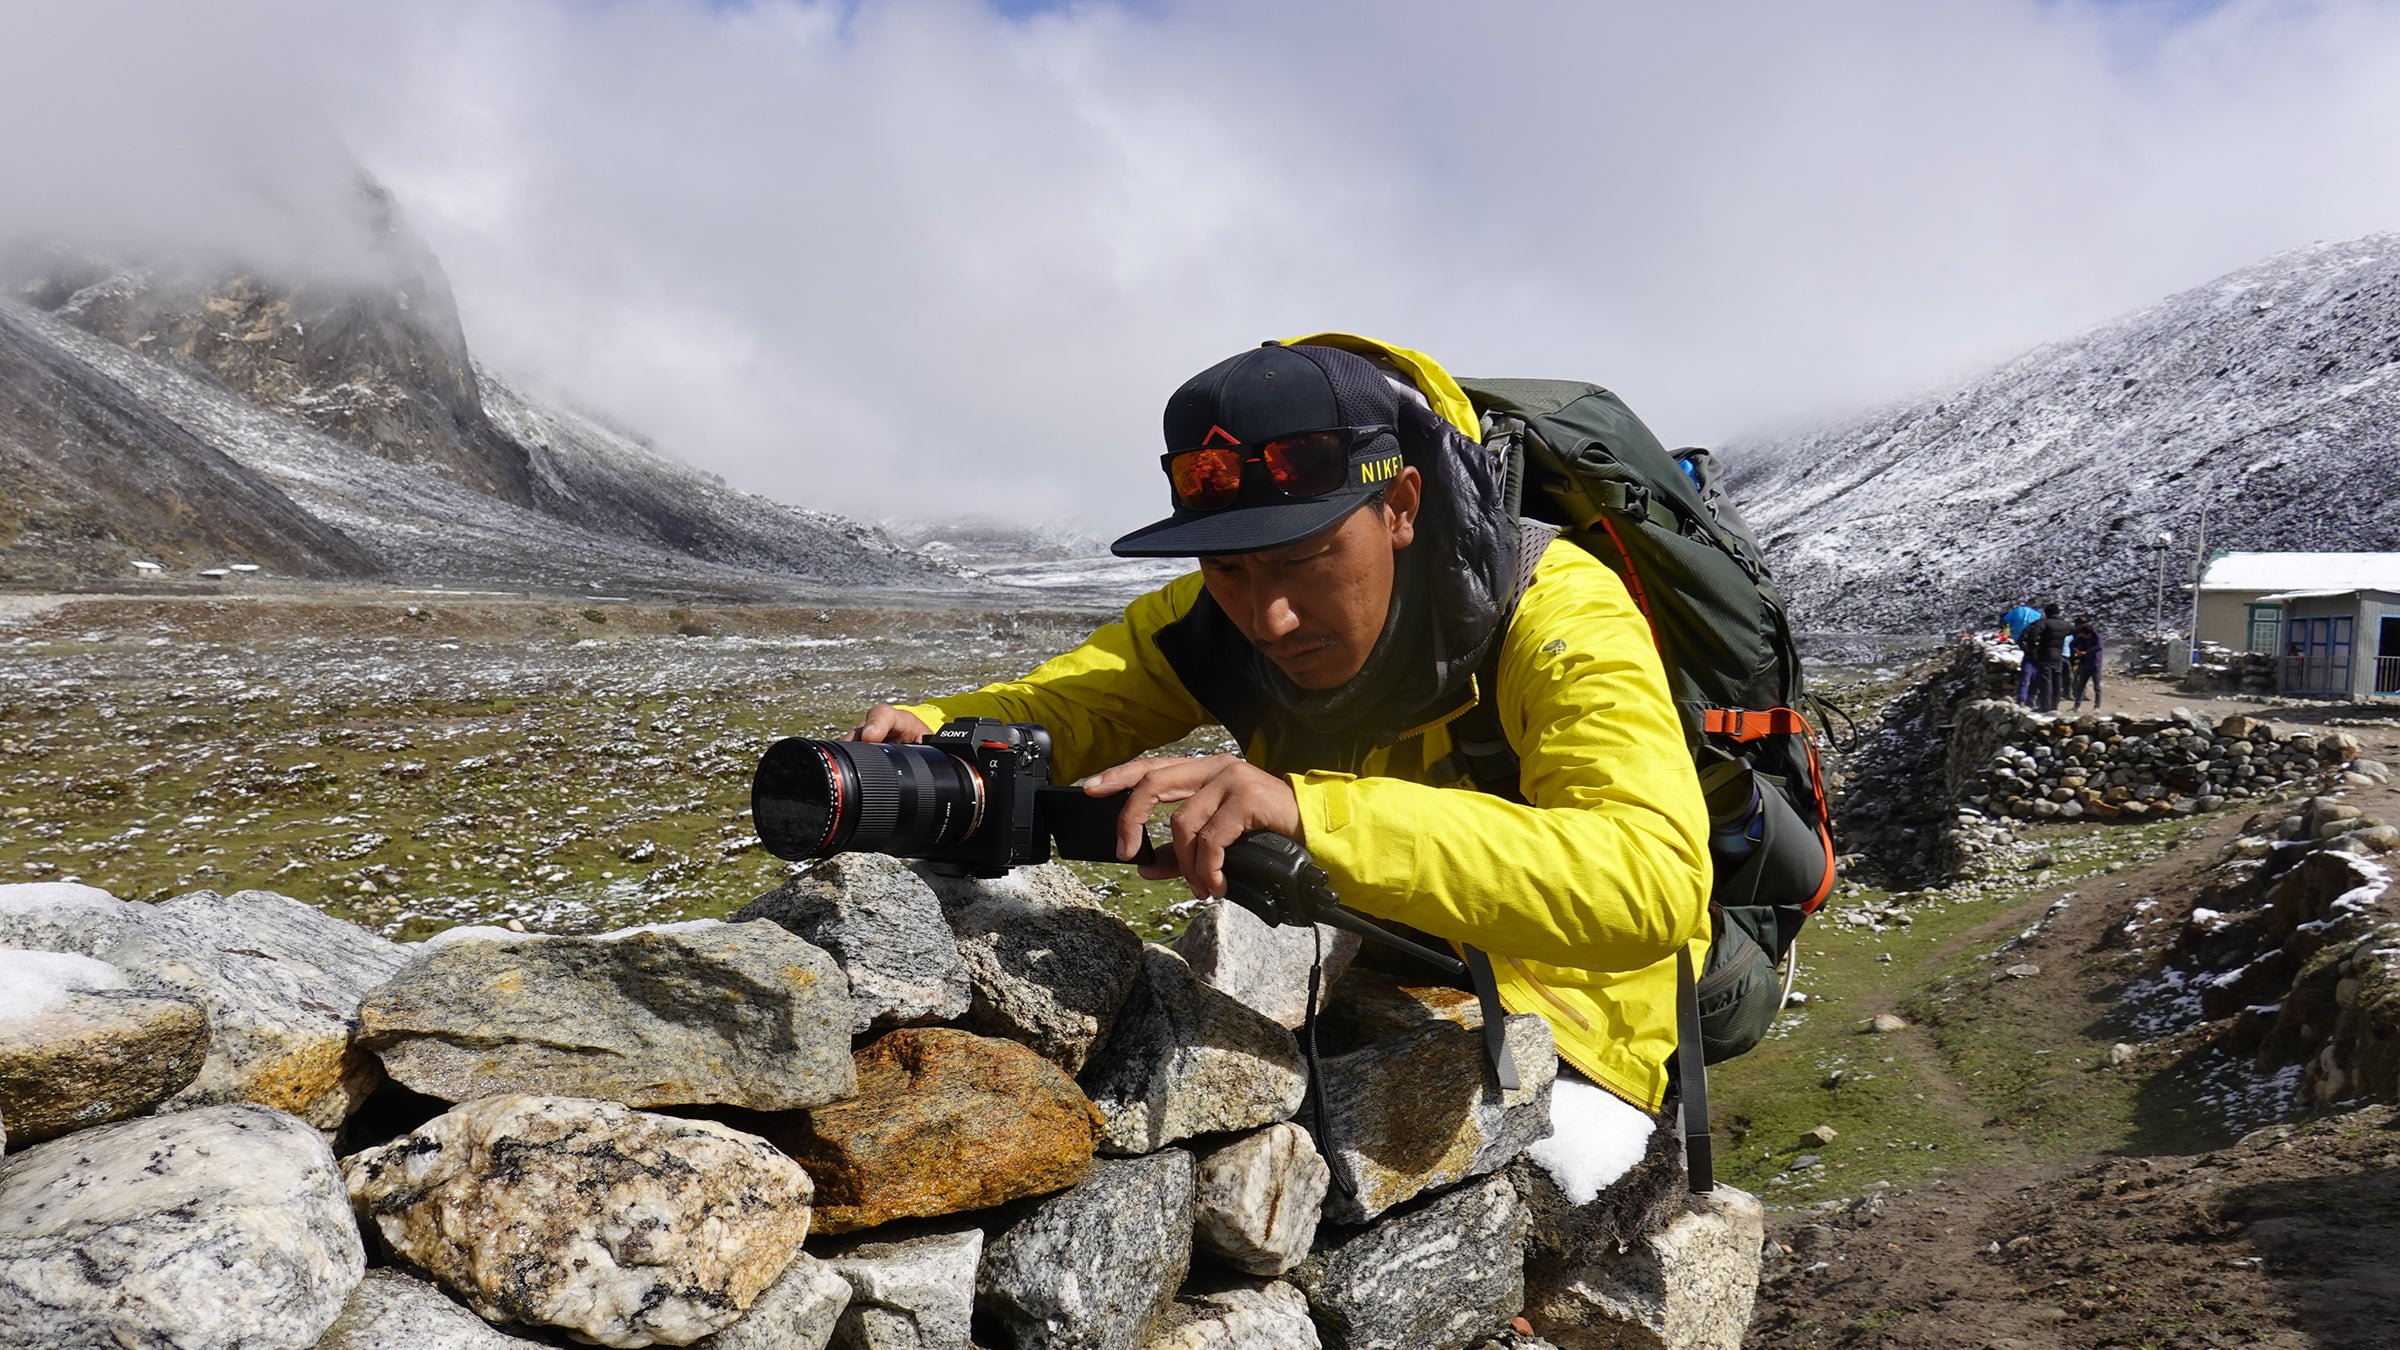 Ang Pemba Sherpa taking photos at Pheriche